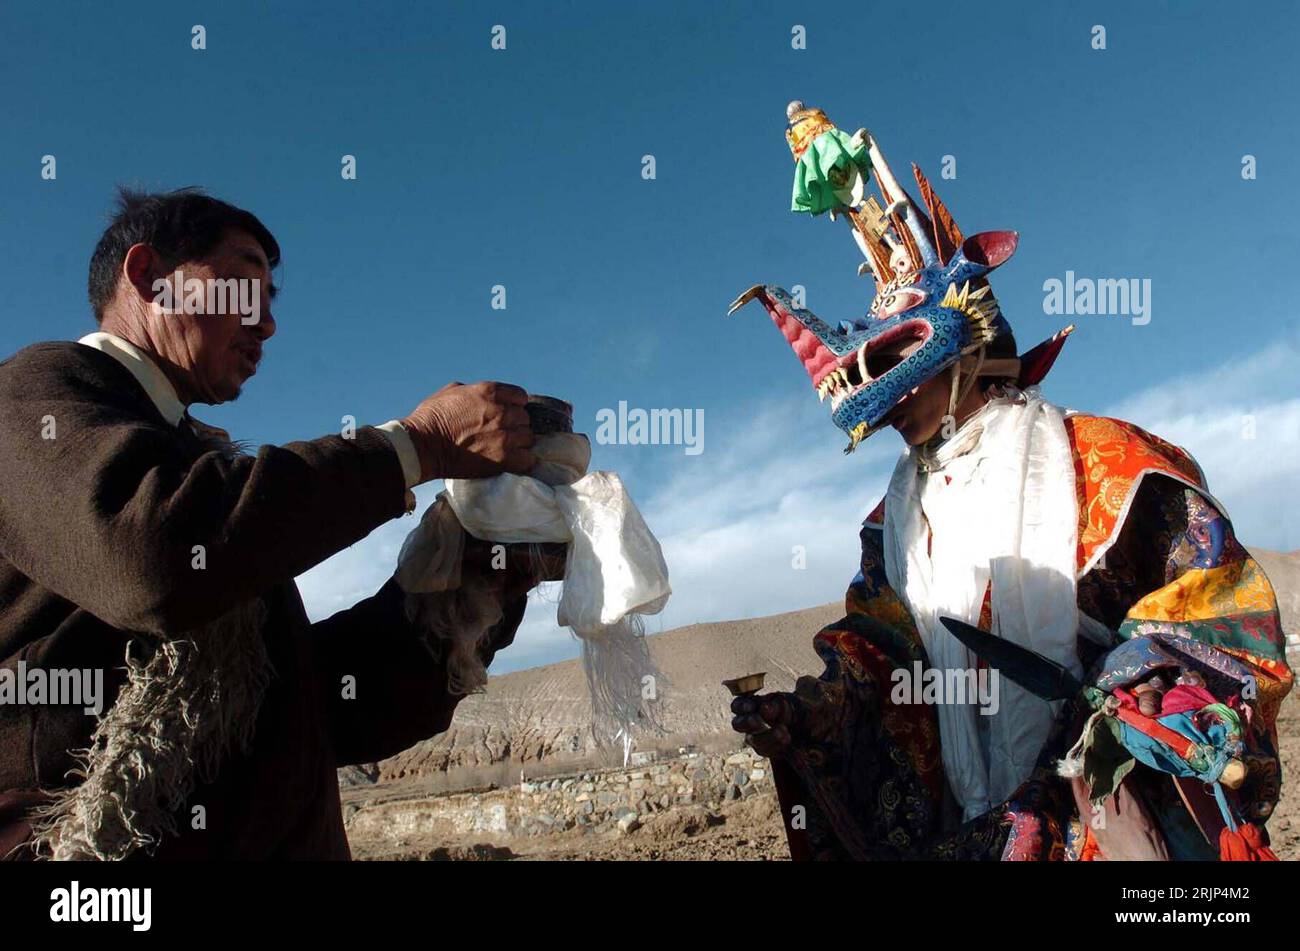 Bildnummer: 51085413  Datum: 30.01.2006  Copyright: imago/Xinhua Einheimische weihen ein Kamel anlässlich einer tibetischen Neujahrszeremonie in Rijia - PUBLICATIONxNOTxINxCHN, Personen; 2006, Einheimische, Frühjahrsfest, Neujahrsfest, Frühlingsfest, chinesische, chinesisches, Tradition, Geistervertreibung, tibetisch, tibetische, chinesisches, chinesische, Zeremonie, Geisterzeremonie, Land, Leute, traditionell, traditionell, Kamele, maskiert, maskierte, Kostüm, Kostüme, kostümiert, Säugetiere, weihe, weiht,; , quer, Kbdig, Gruppenbild, Tibet, Buddhismus, Religion,  , Stock Photo